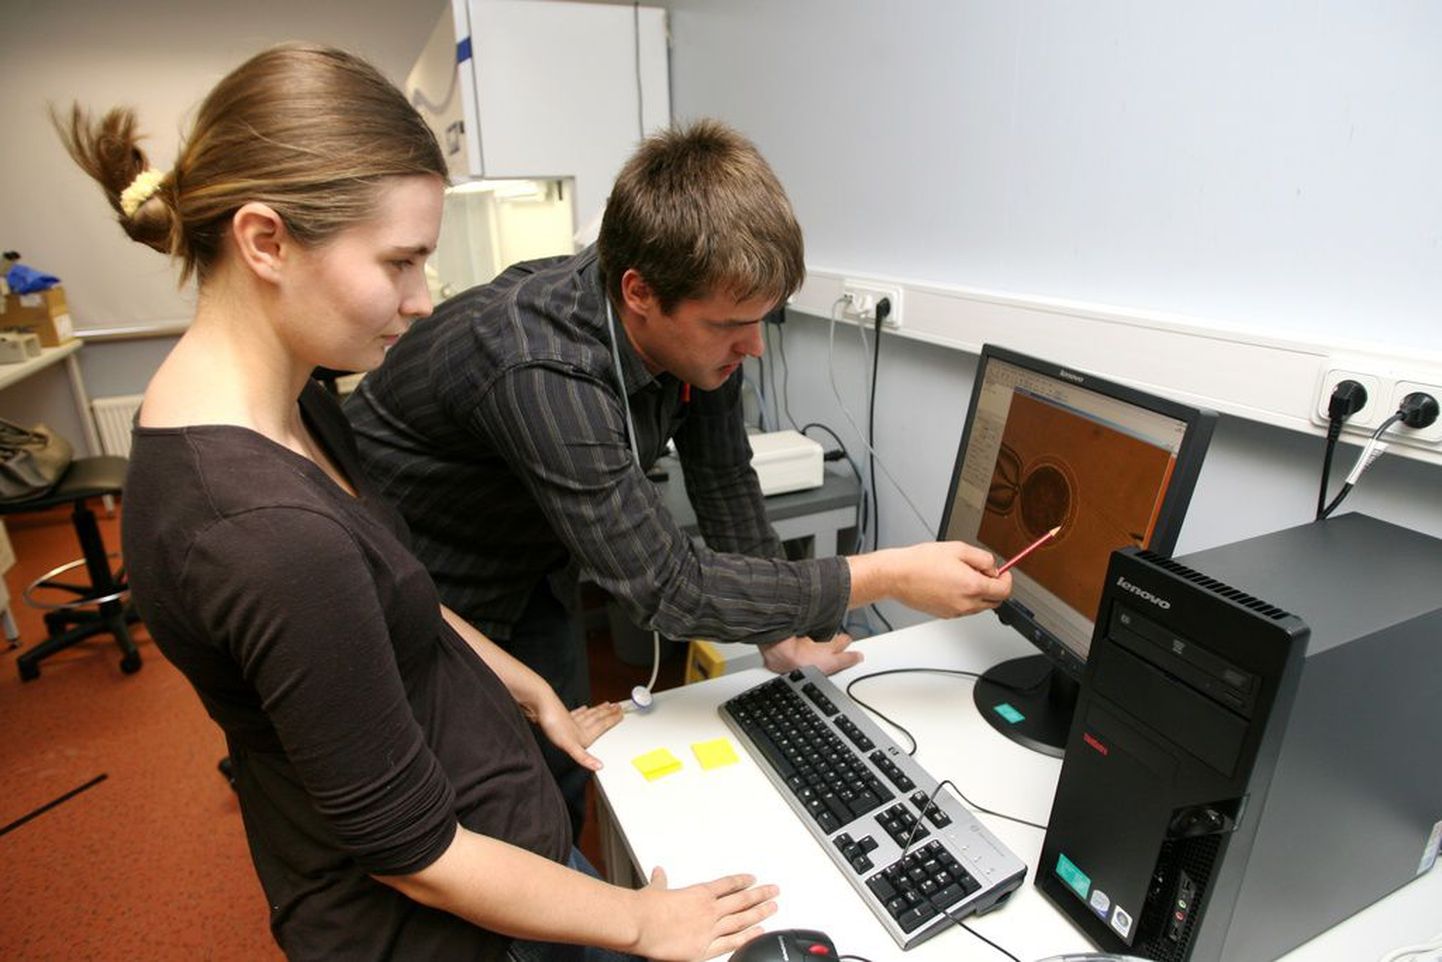 Tartu kahe ülikooli teadlased Mario Plaas ja Pille Pärn silmitsevad monitoriekraanilt 350-kordse suurendusega lehma munarakku, millest on just eemaldatud tuum.